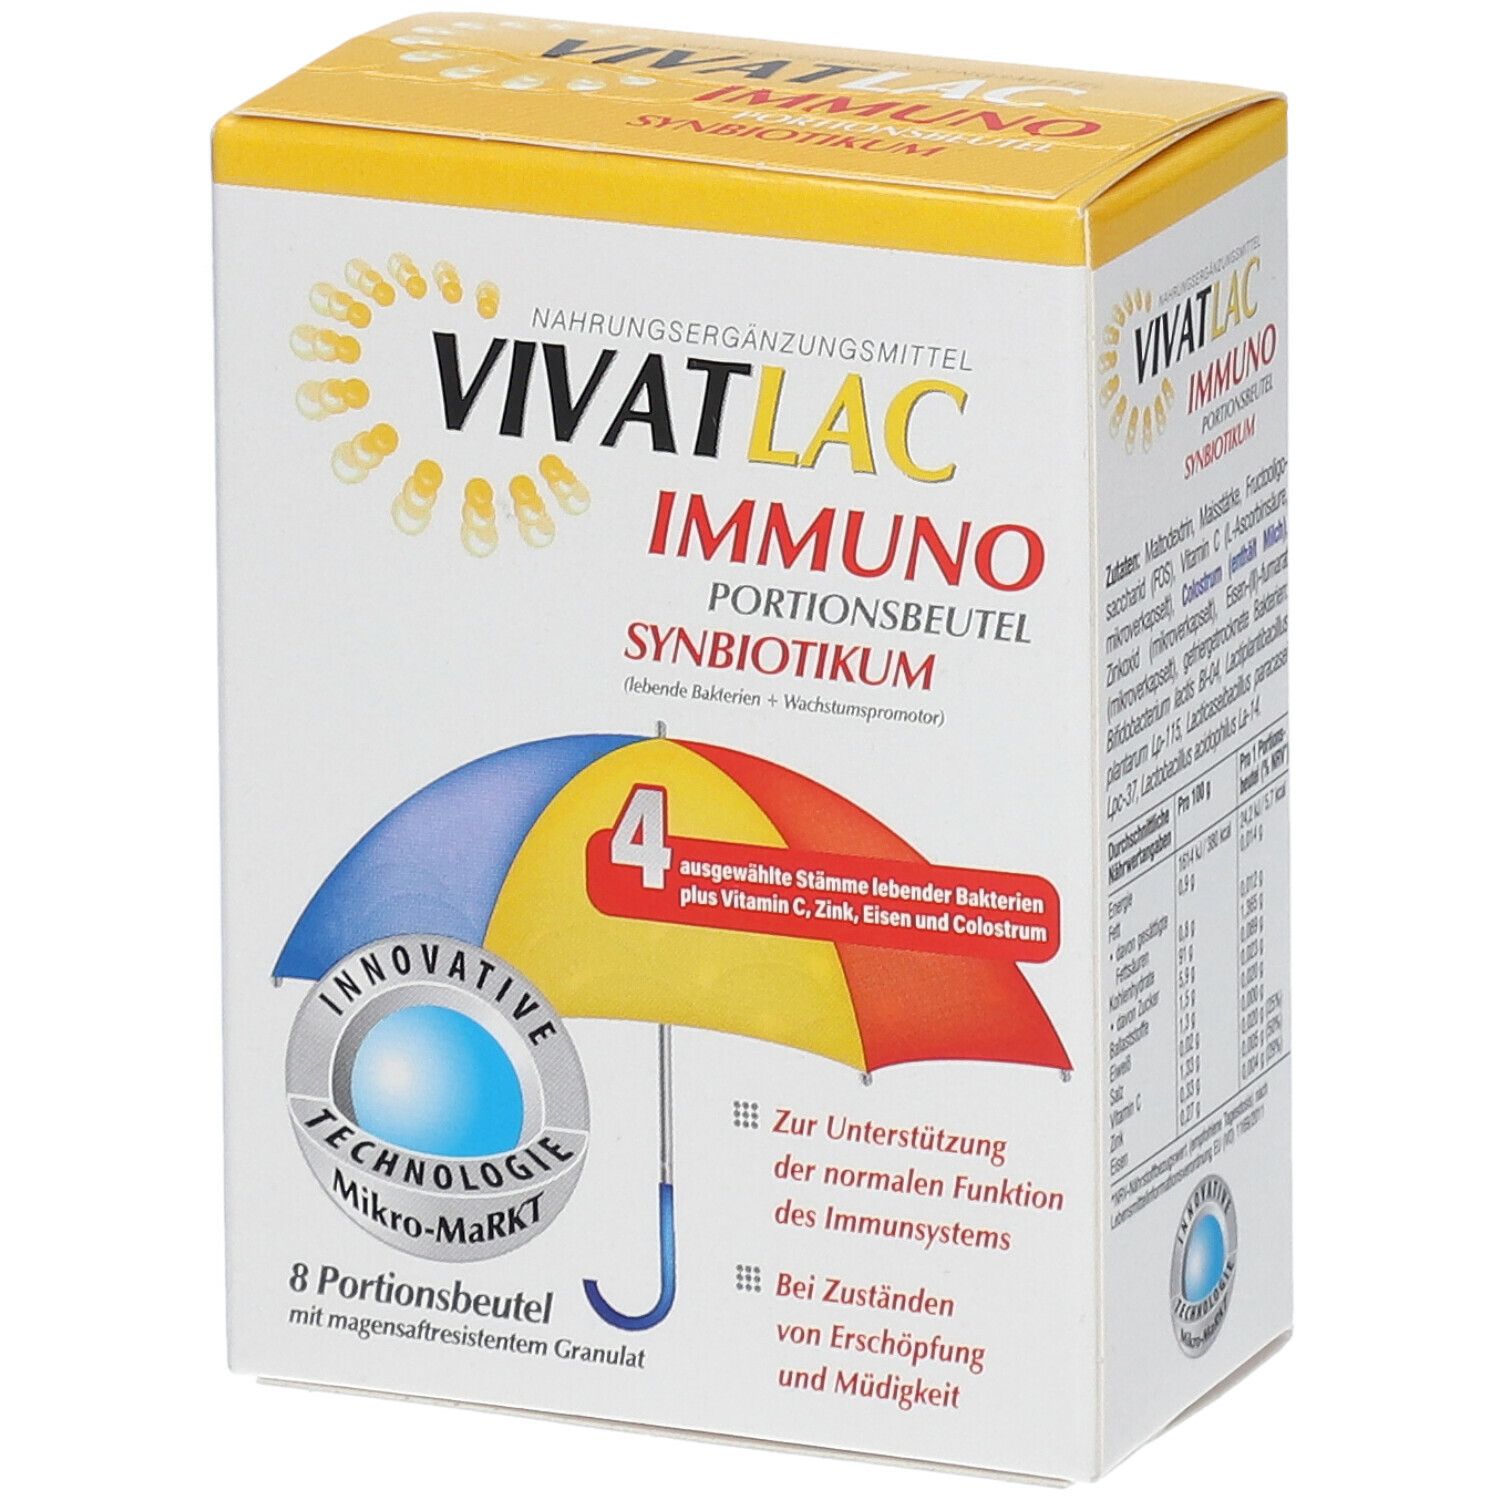 VIVATLAC Immuno